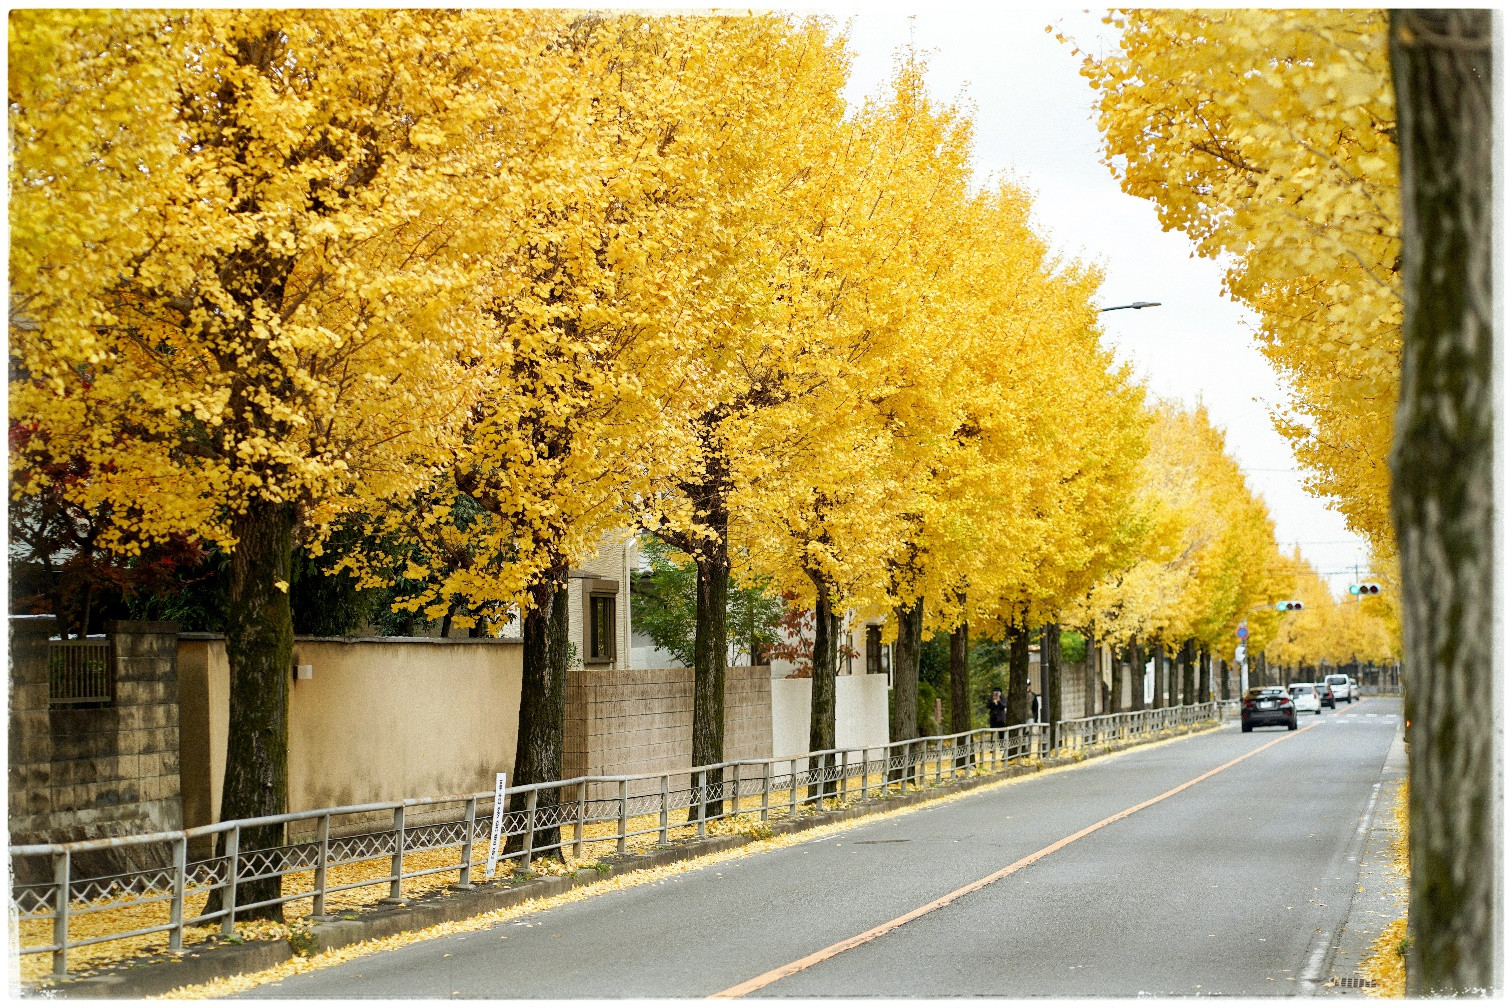 Đường phố trải thảm vàng, công viên rợp sắc đỏ ngày cuối thu ở Nhật Bản - 5